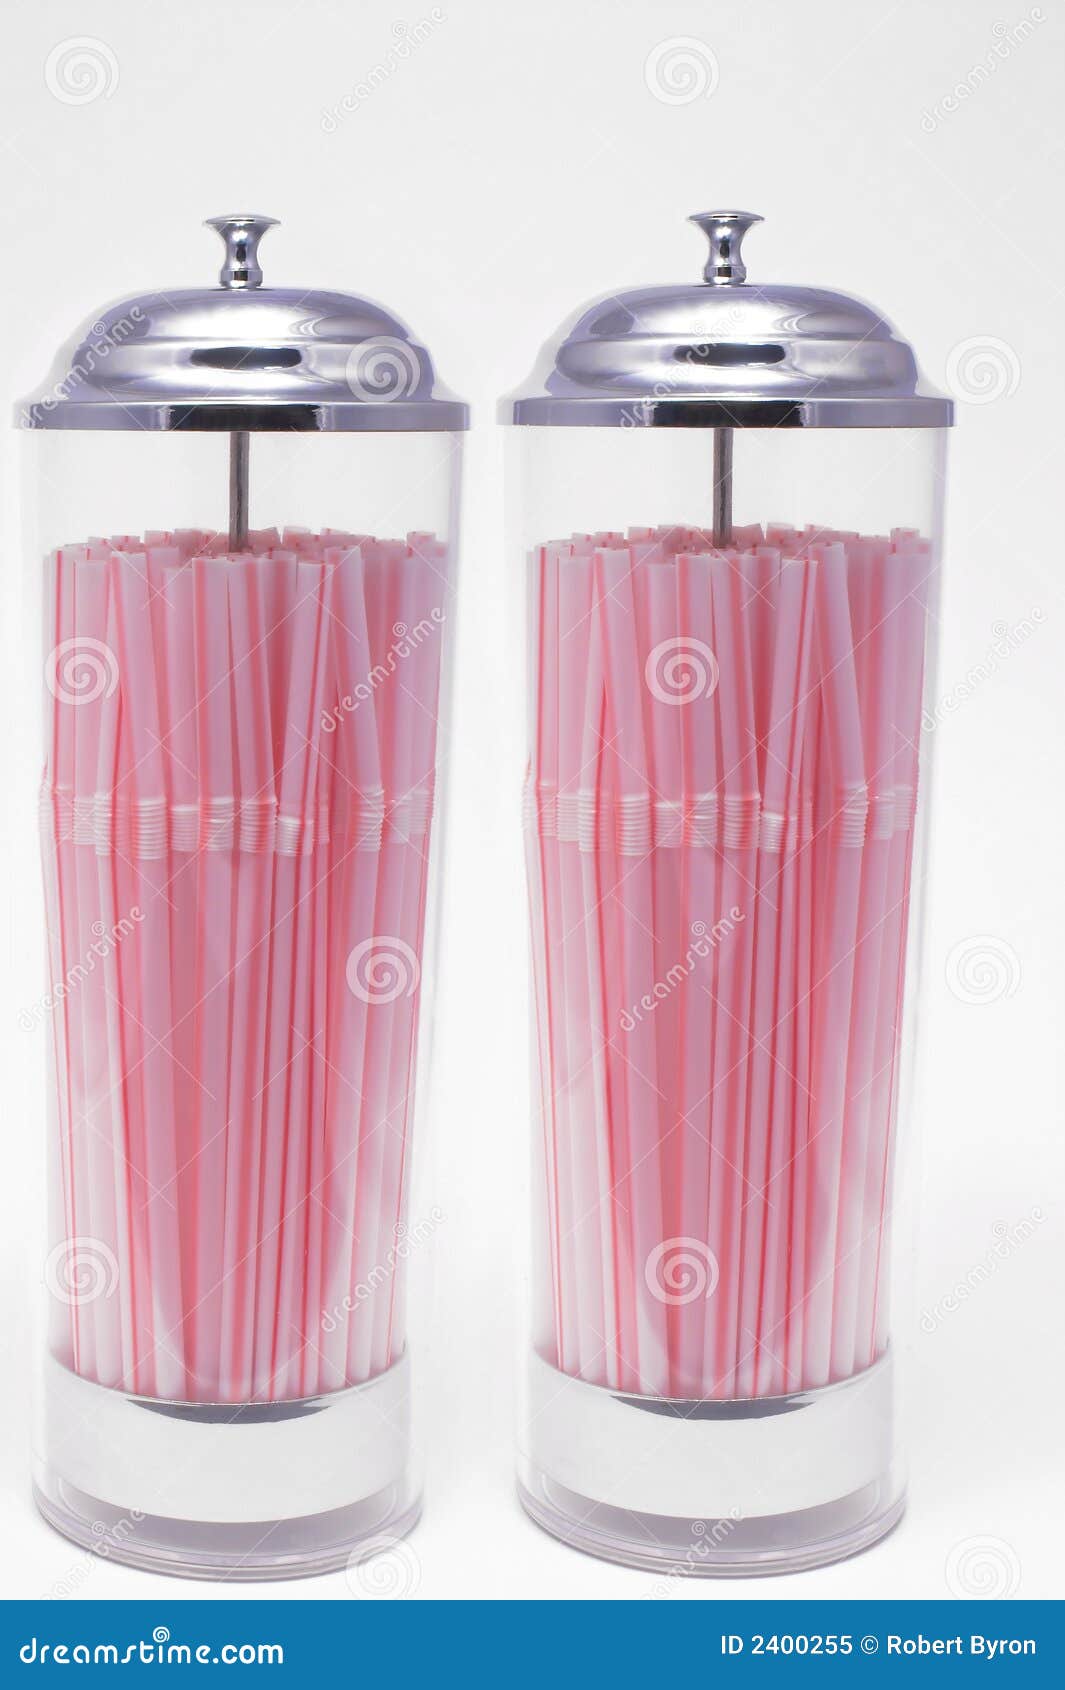 https://thumbs.dreamstime.com/z/drinking-straw-dispenser-2400255.jpg